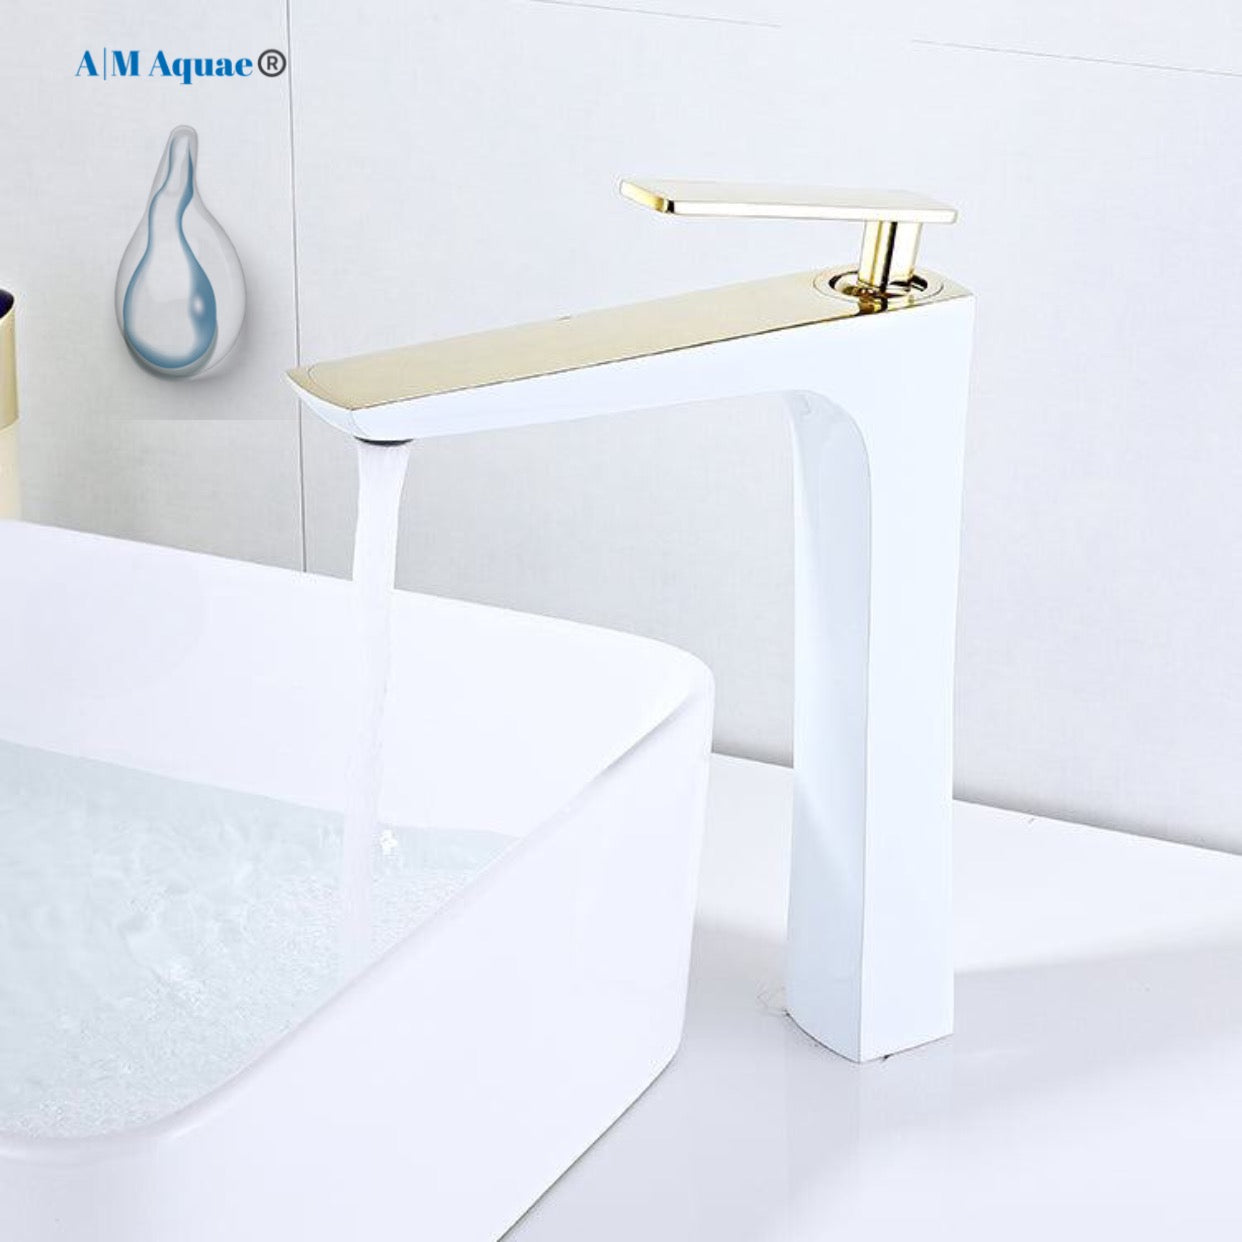 A|M Aquae Modern White Bathroom Faucet ,Single Handle Brass White Gold Tall Bathroom Basin Faucet